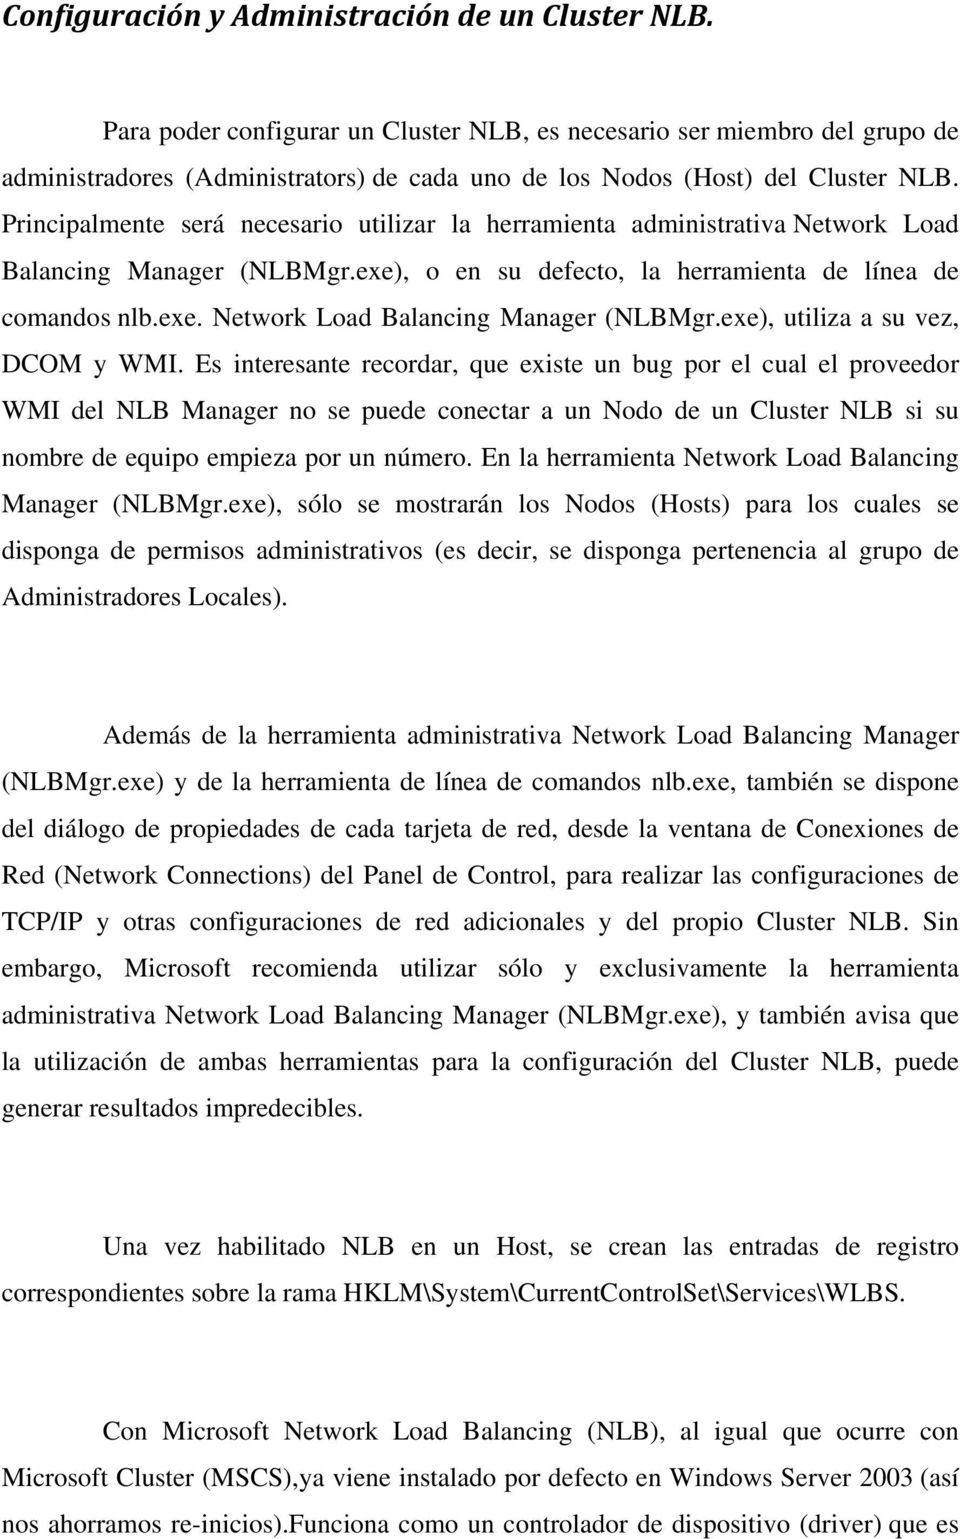 Principalmente será necesario utilizar la herramienta administrativa Network Load Balancing Manager (NLBMgr.exe), o en su defecto, la herramienta de línea de comandos nlb.exe. Network Load Balancing Manager (NLBMgr.exe), utiliza a su vez, DCOM y WMI.